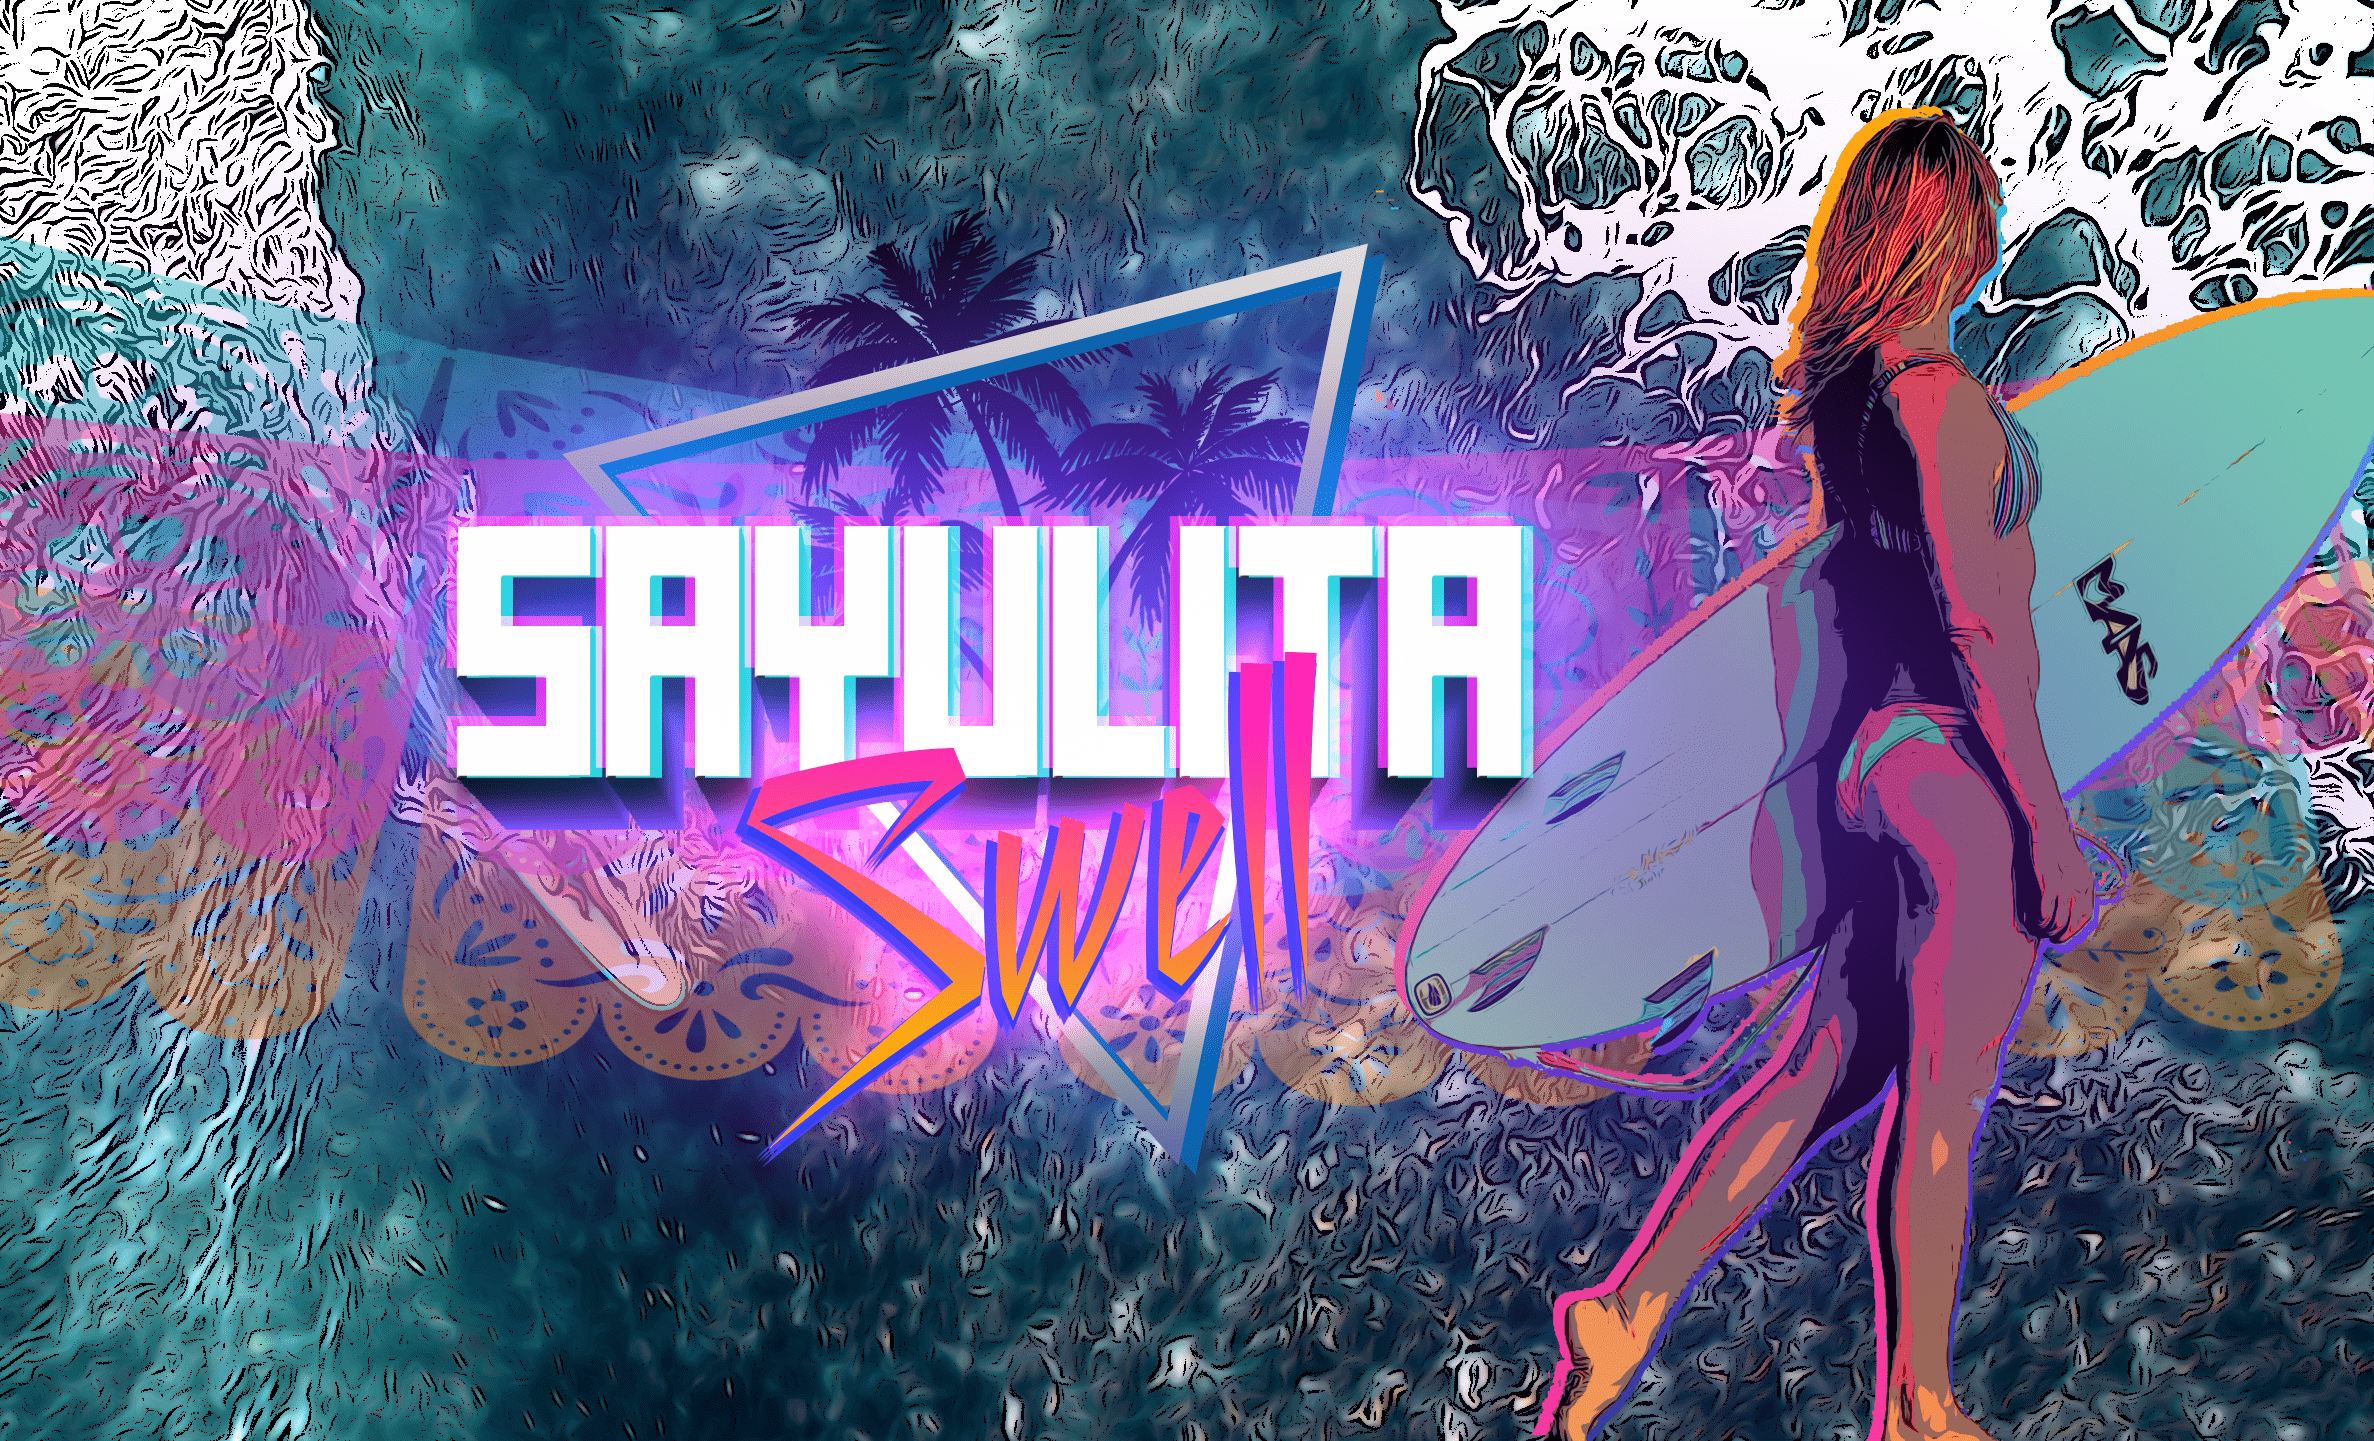 Sayulita Swell